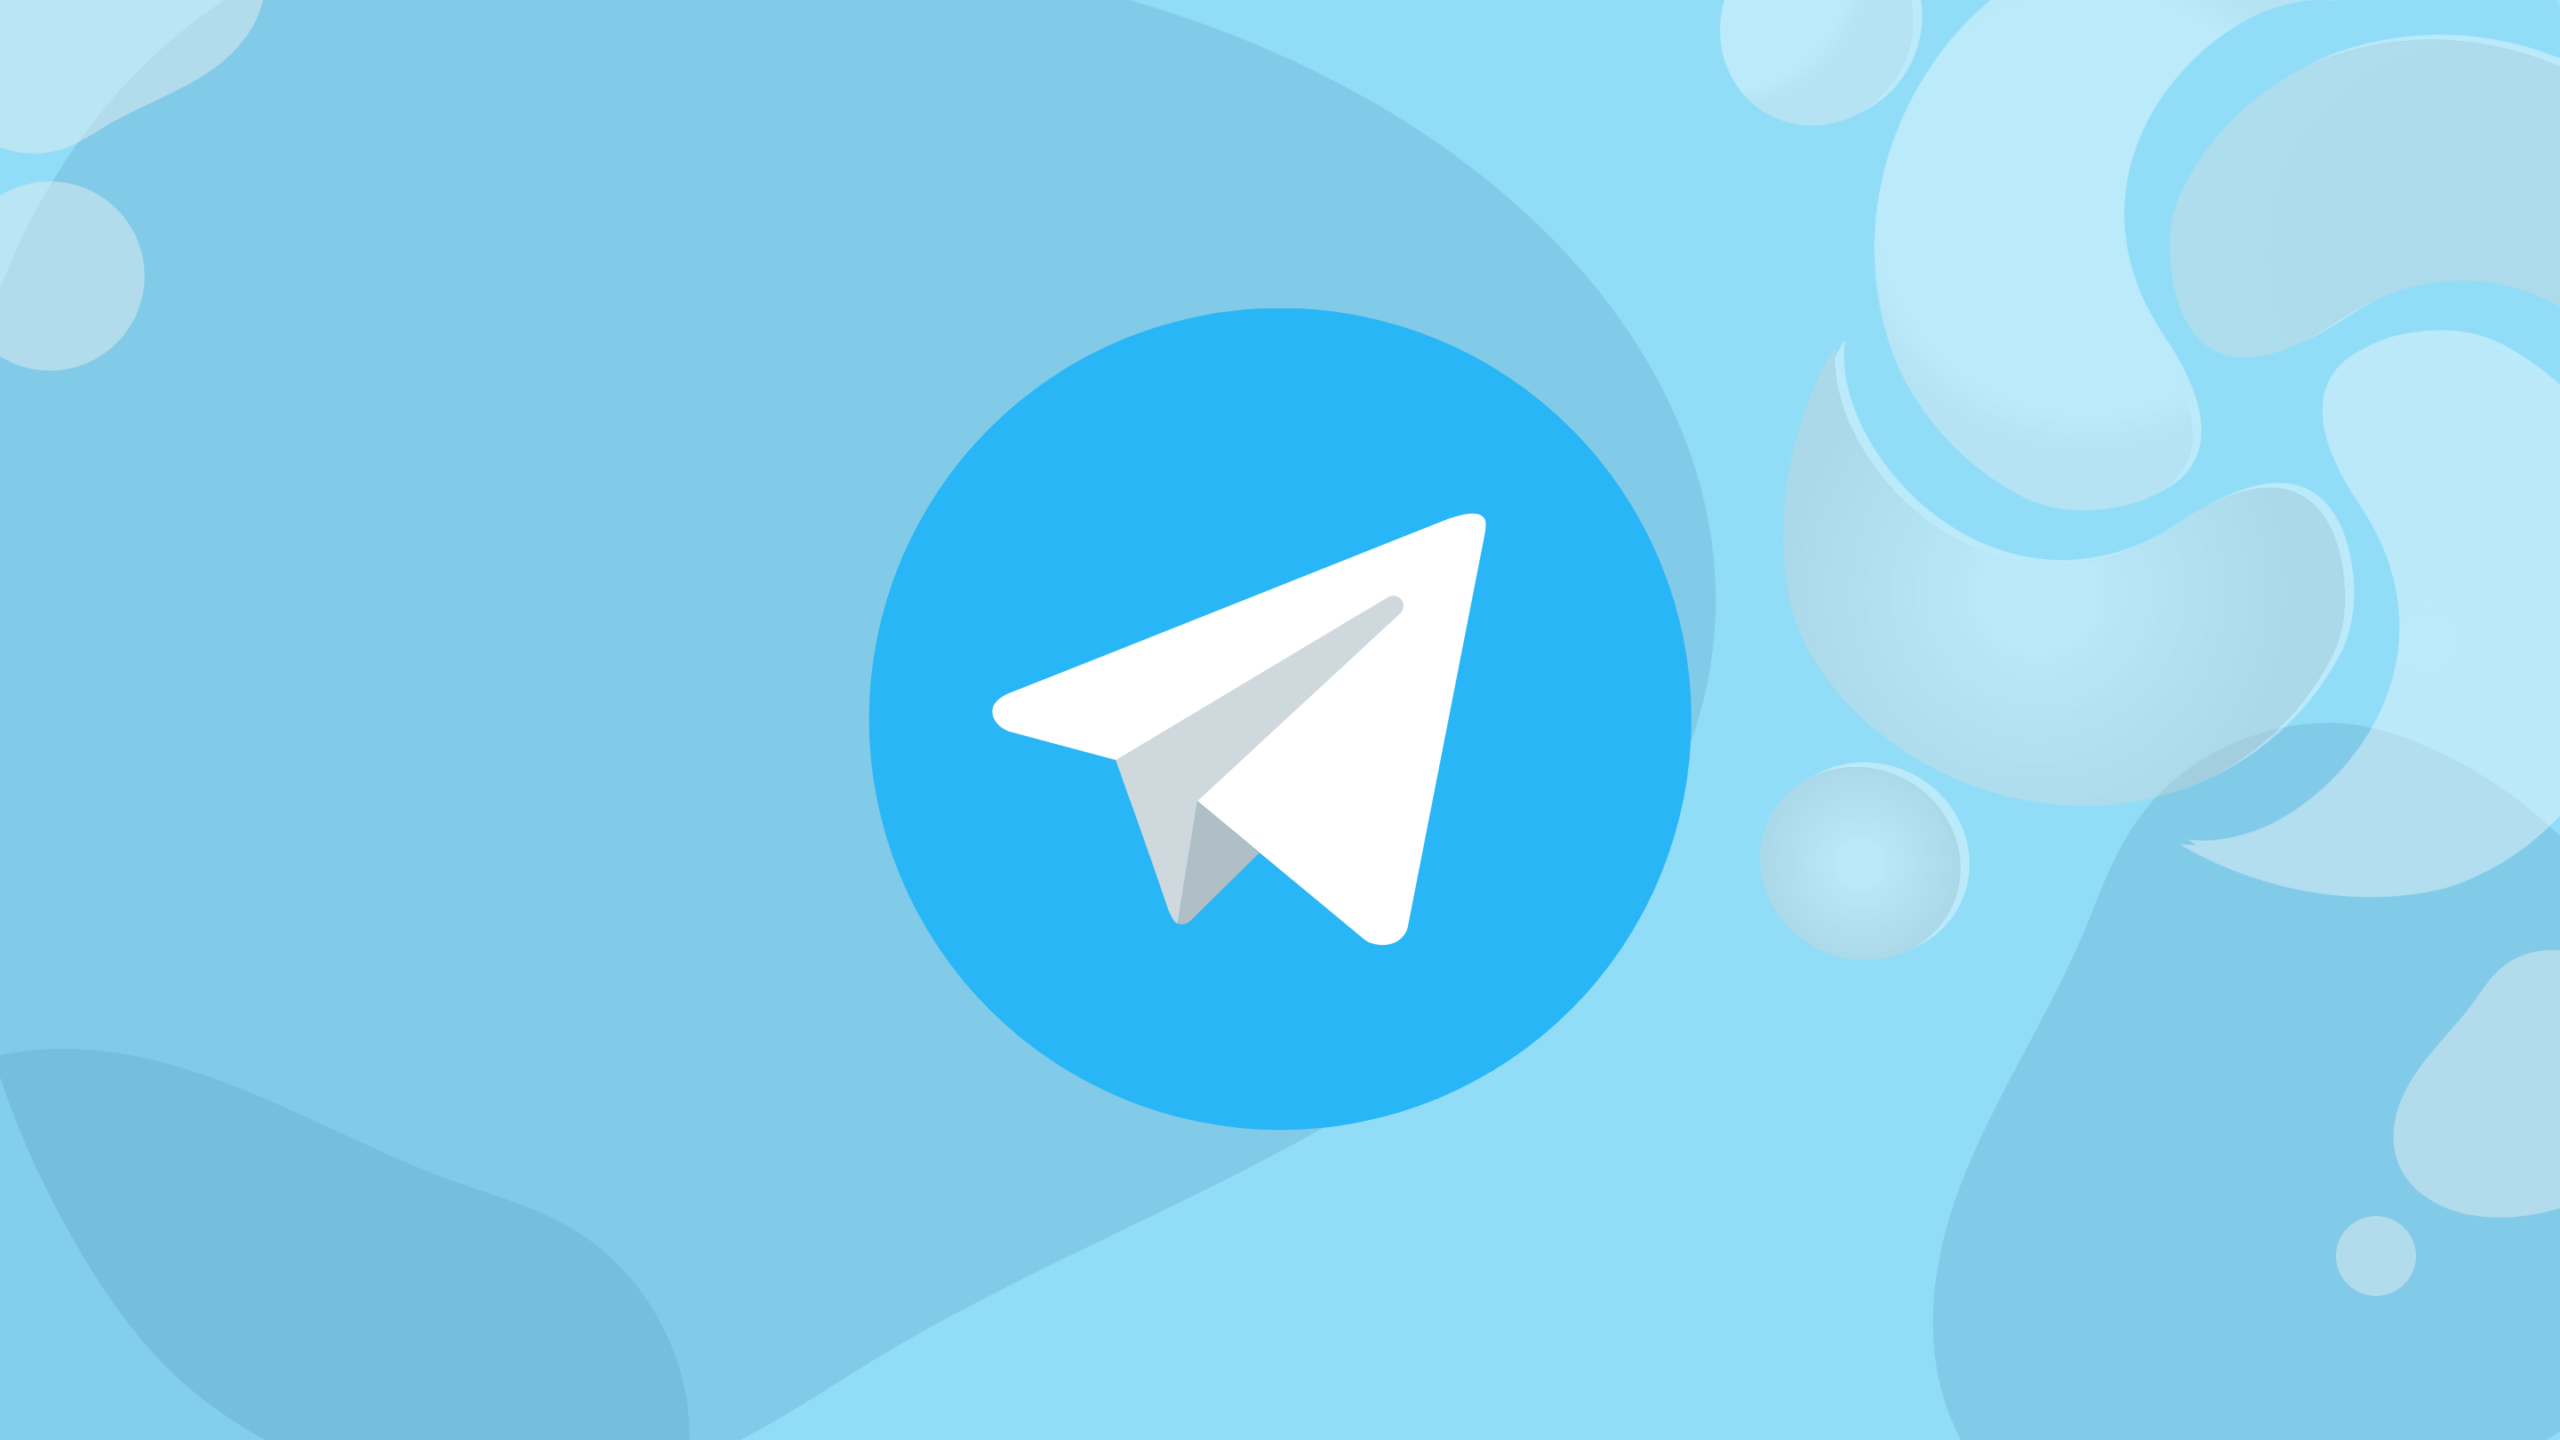 Telegram pode ser bloqueado até esta segunda-feira no Brasil se descumprir decisão do STF